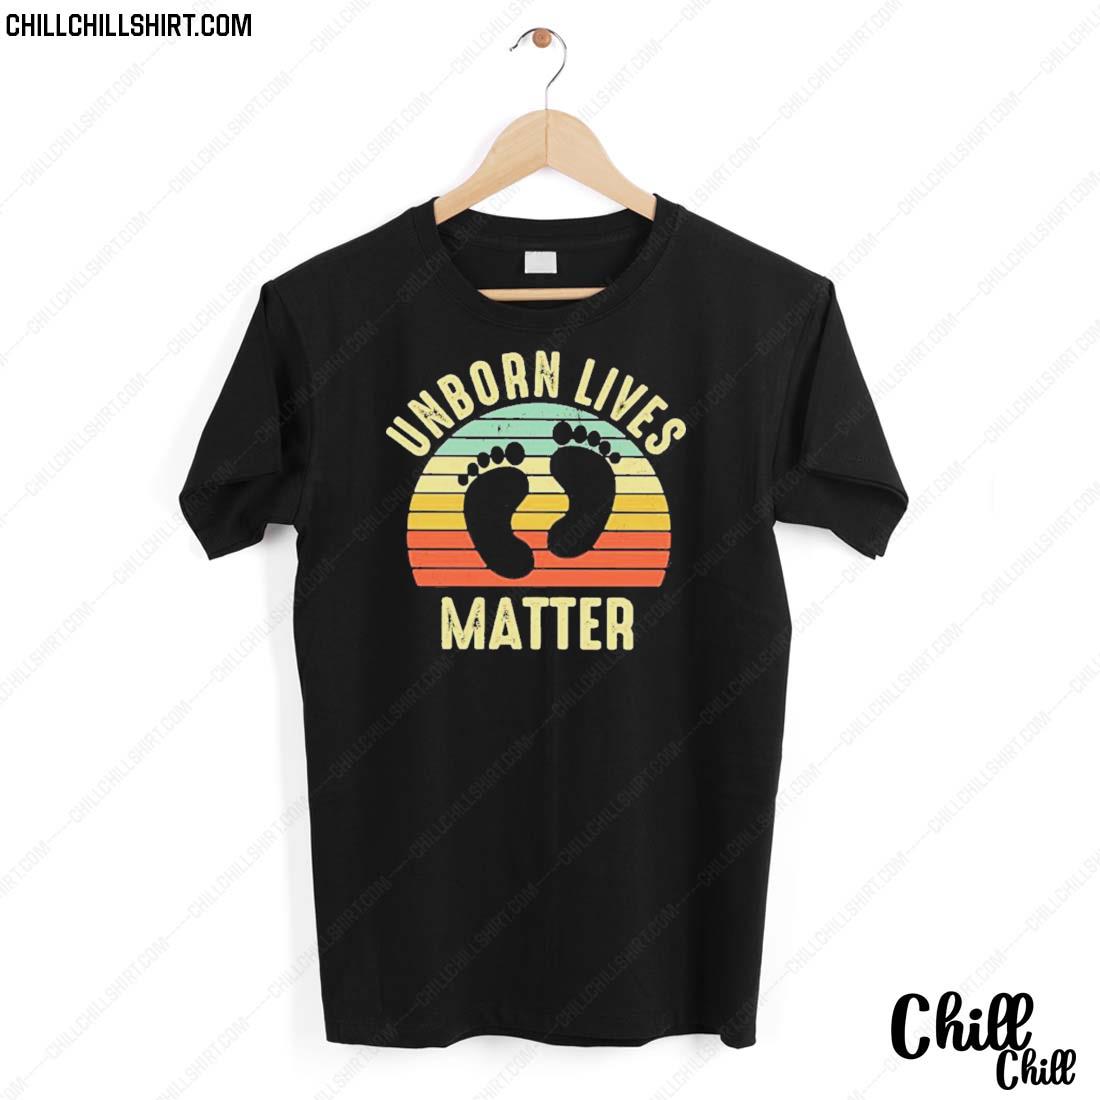 Nice unborn Lives Matter Vintage T-shirt